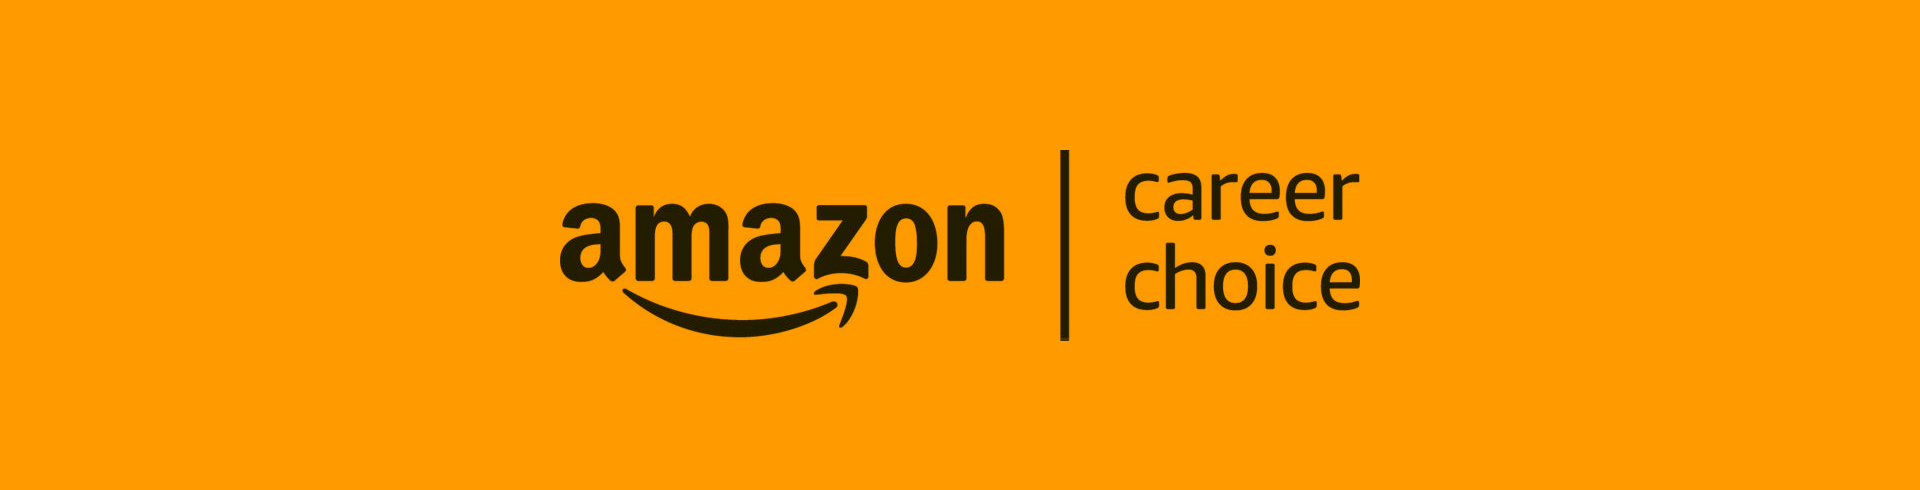 Amazon Career choice